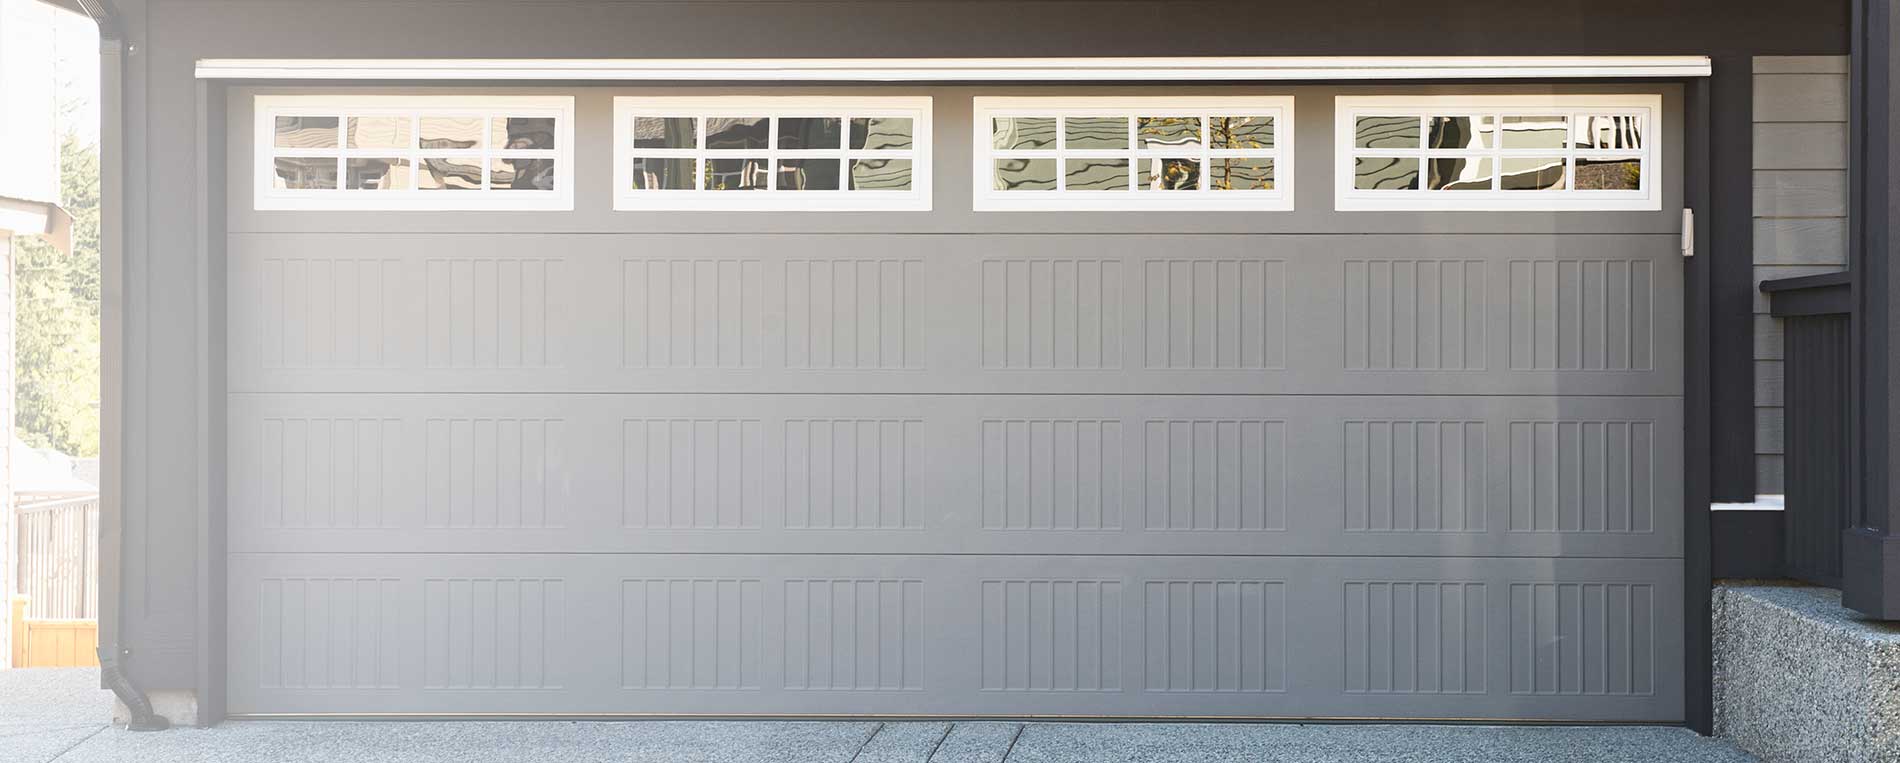 Our Garage Door Services